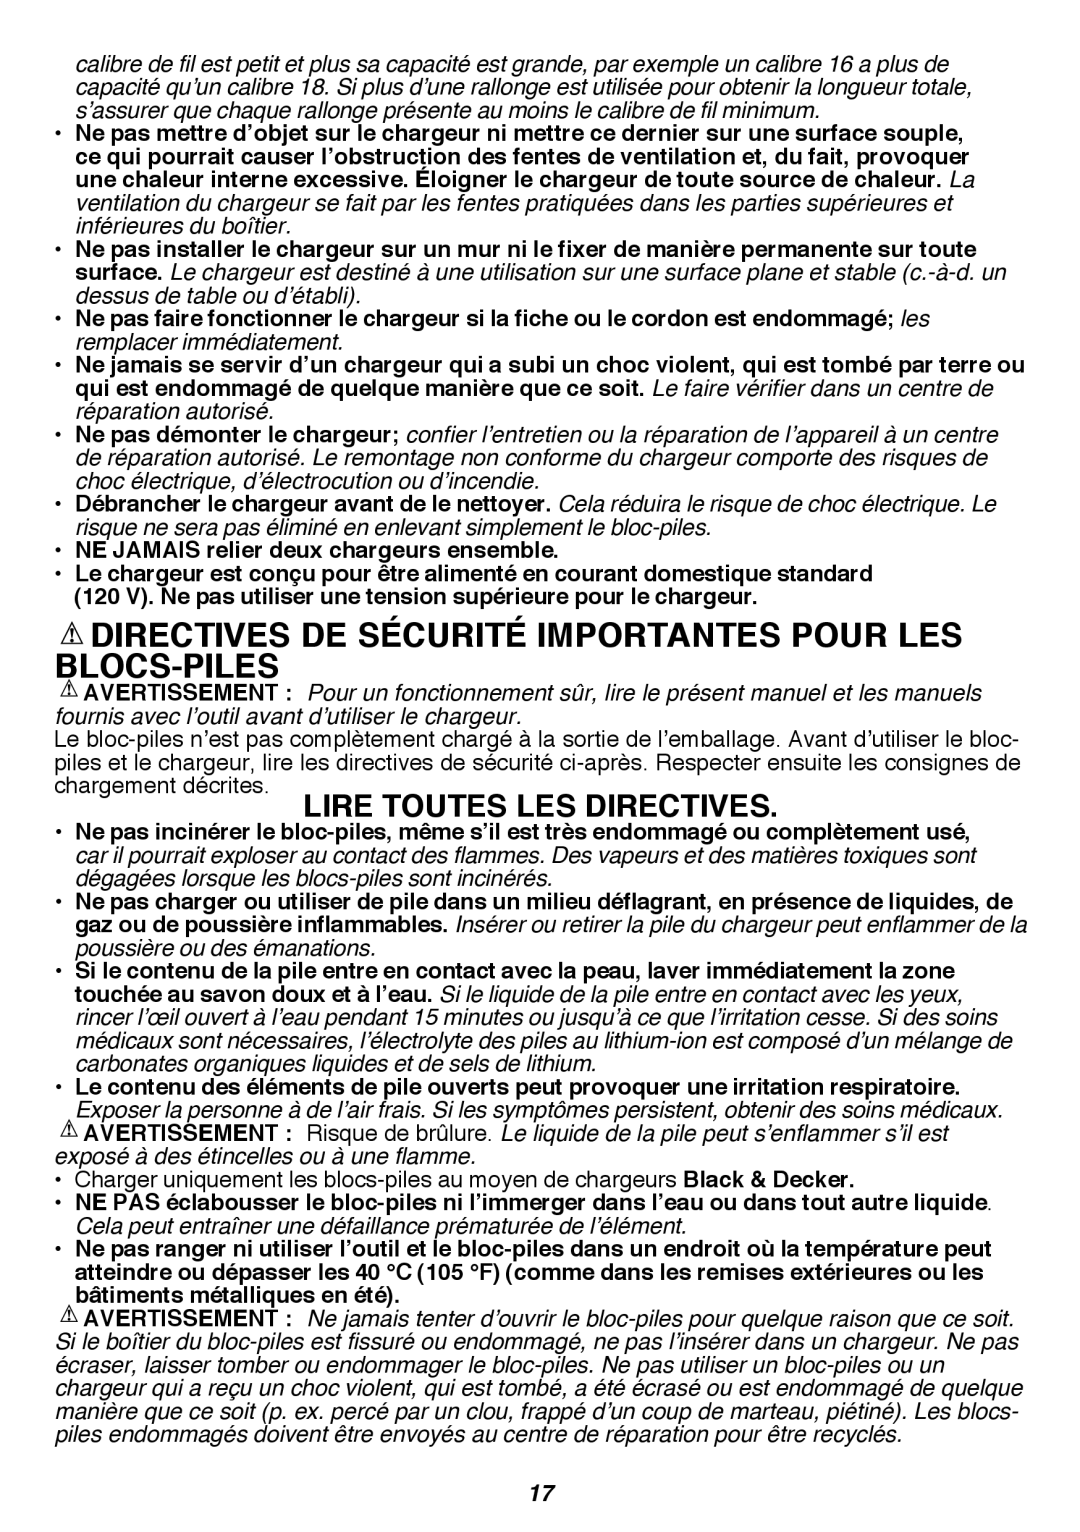 Black & Decker LST420 instruction manual Directives De Sécurité Importantes Pour Les Blocs-Piles 